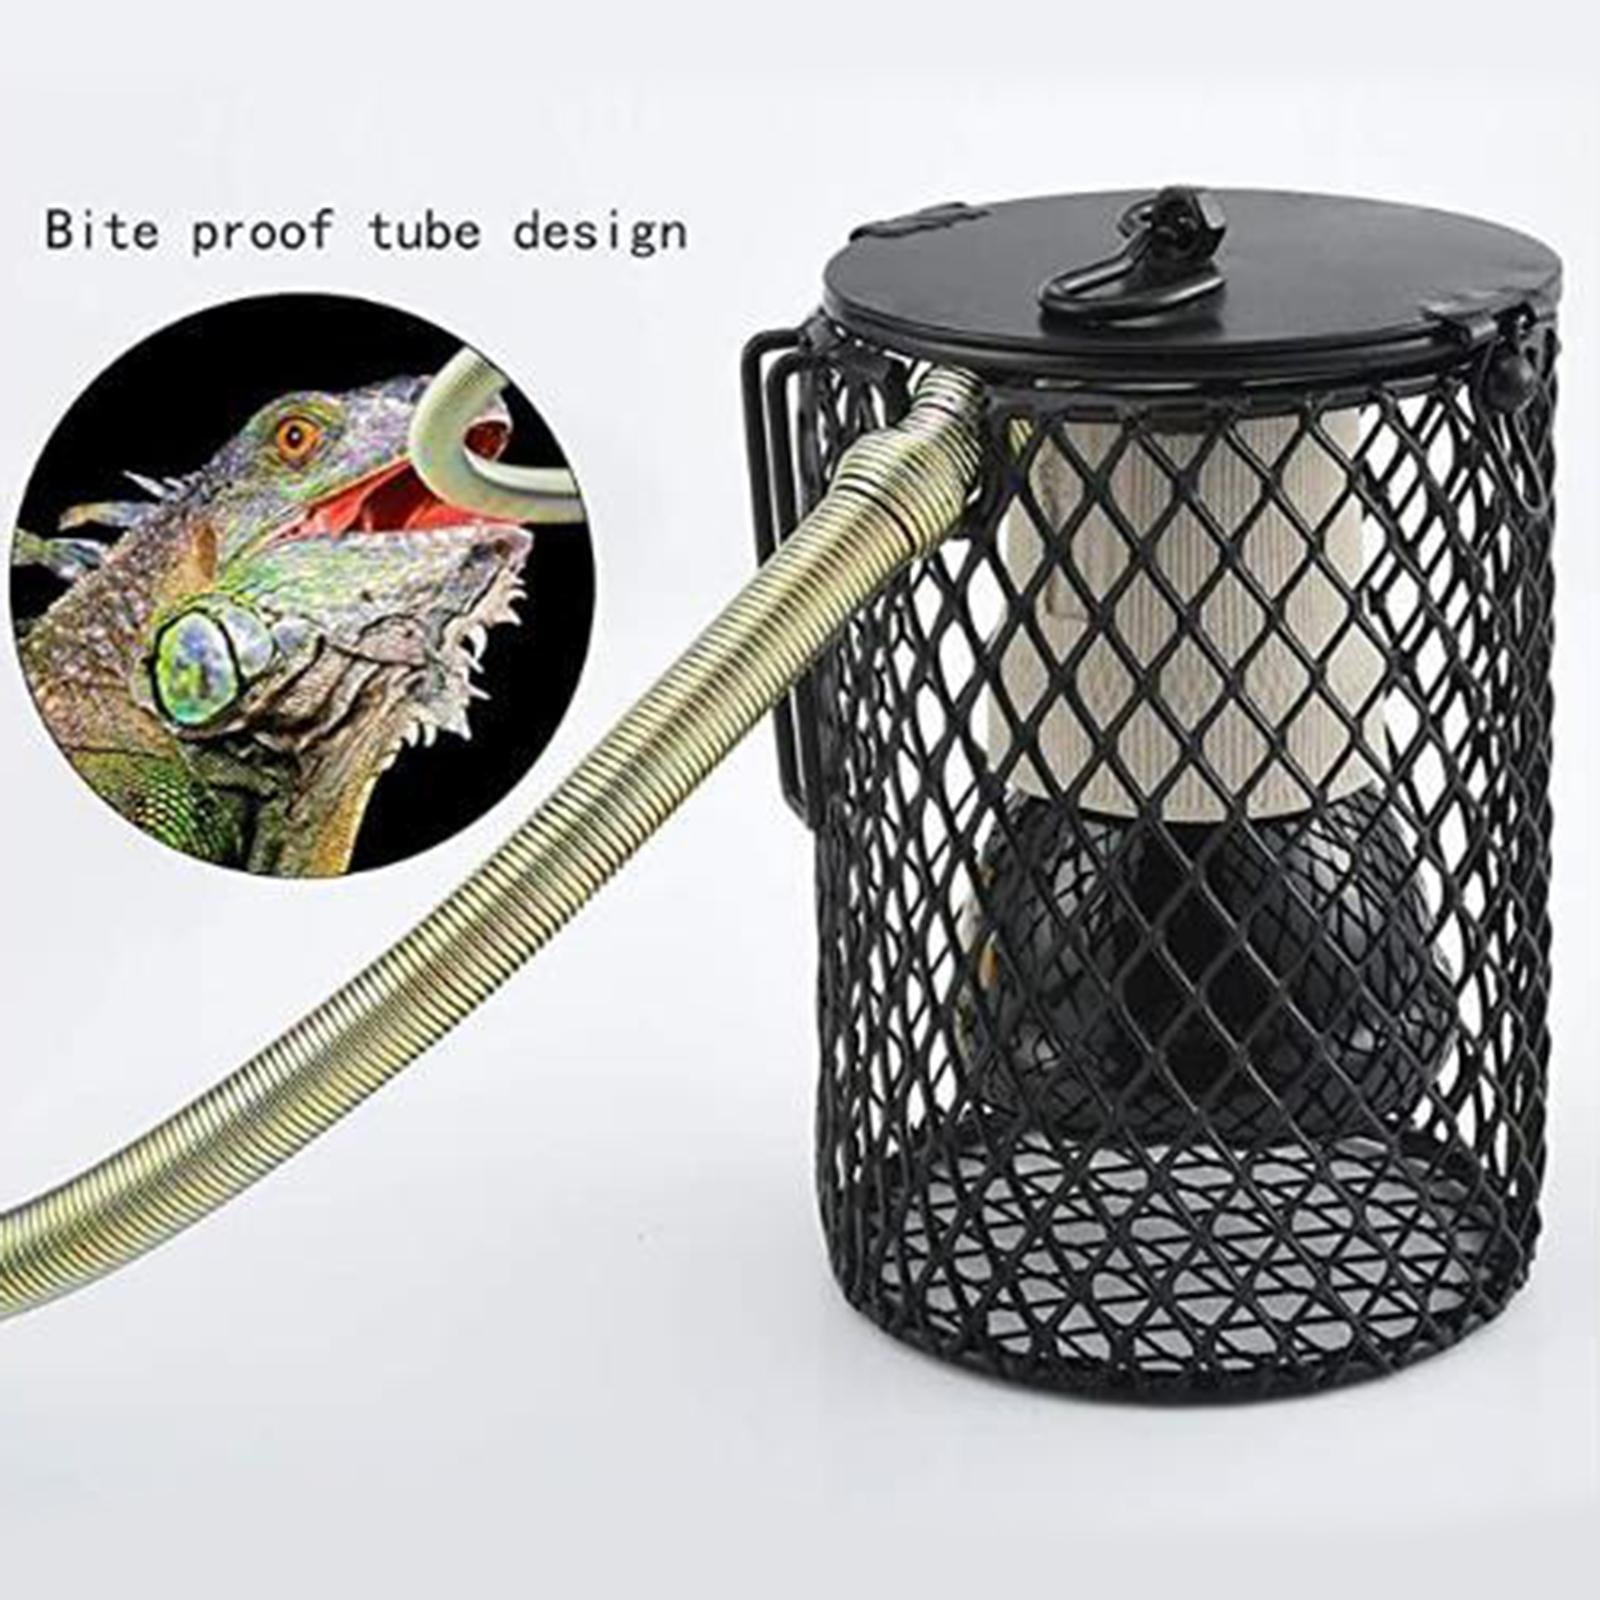 100W Reptile Heating Lamp Tortoise Snakes Brooder Heat Bulb Basking Lighting Black